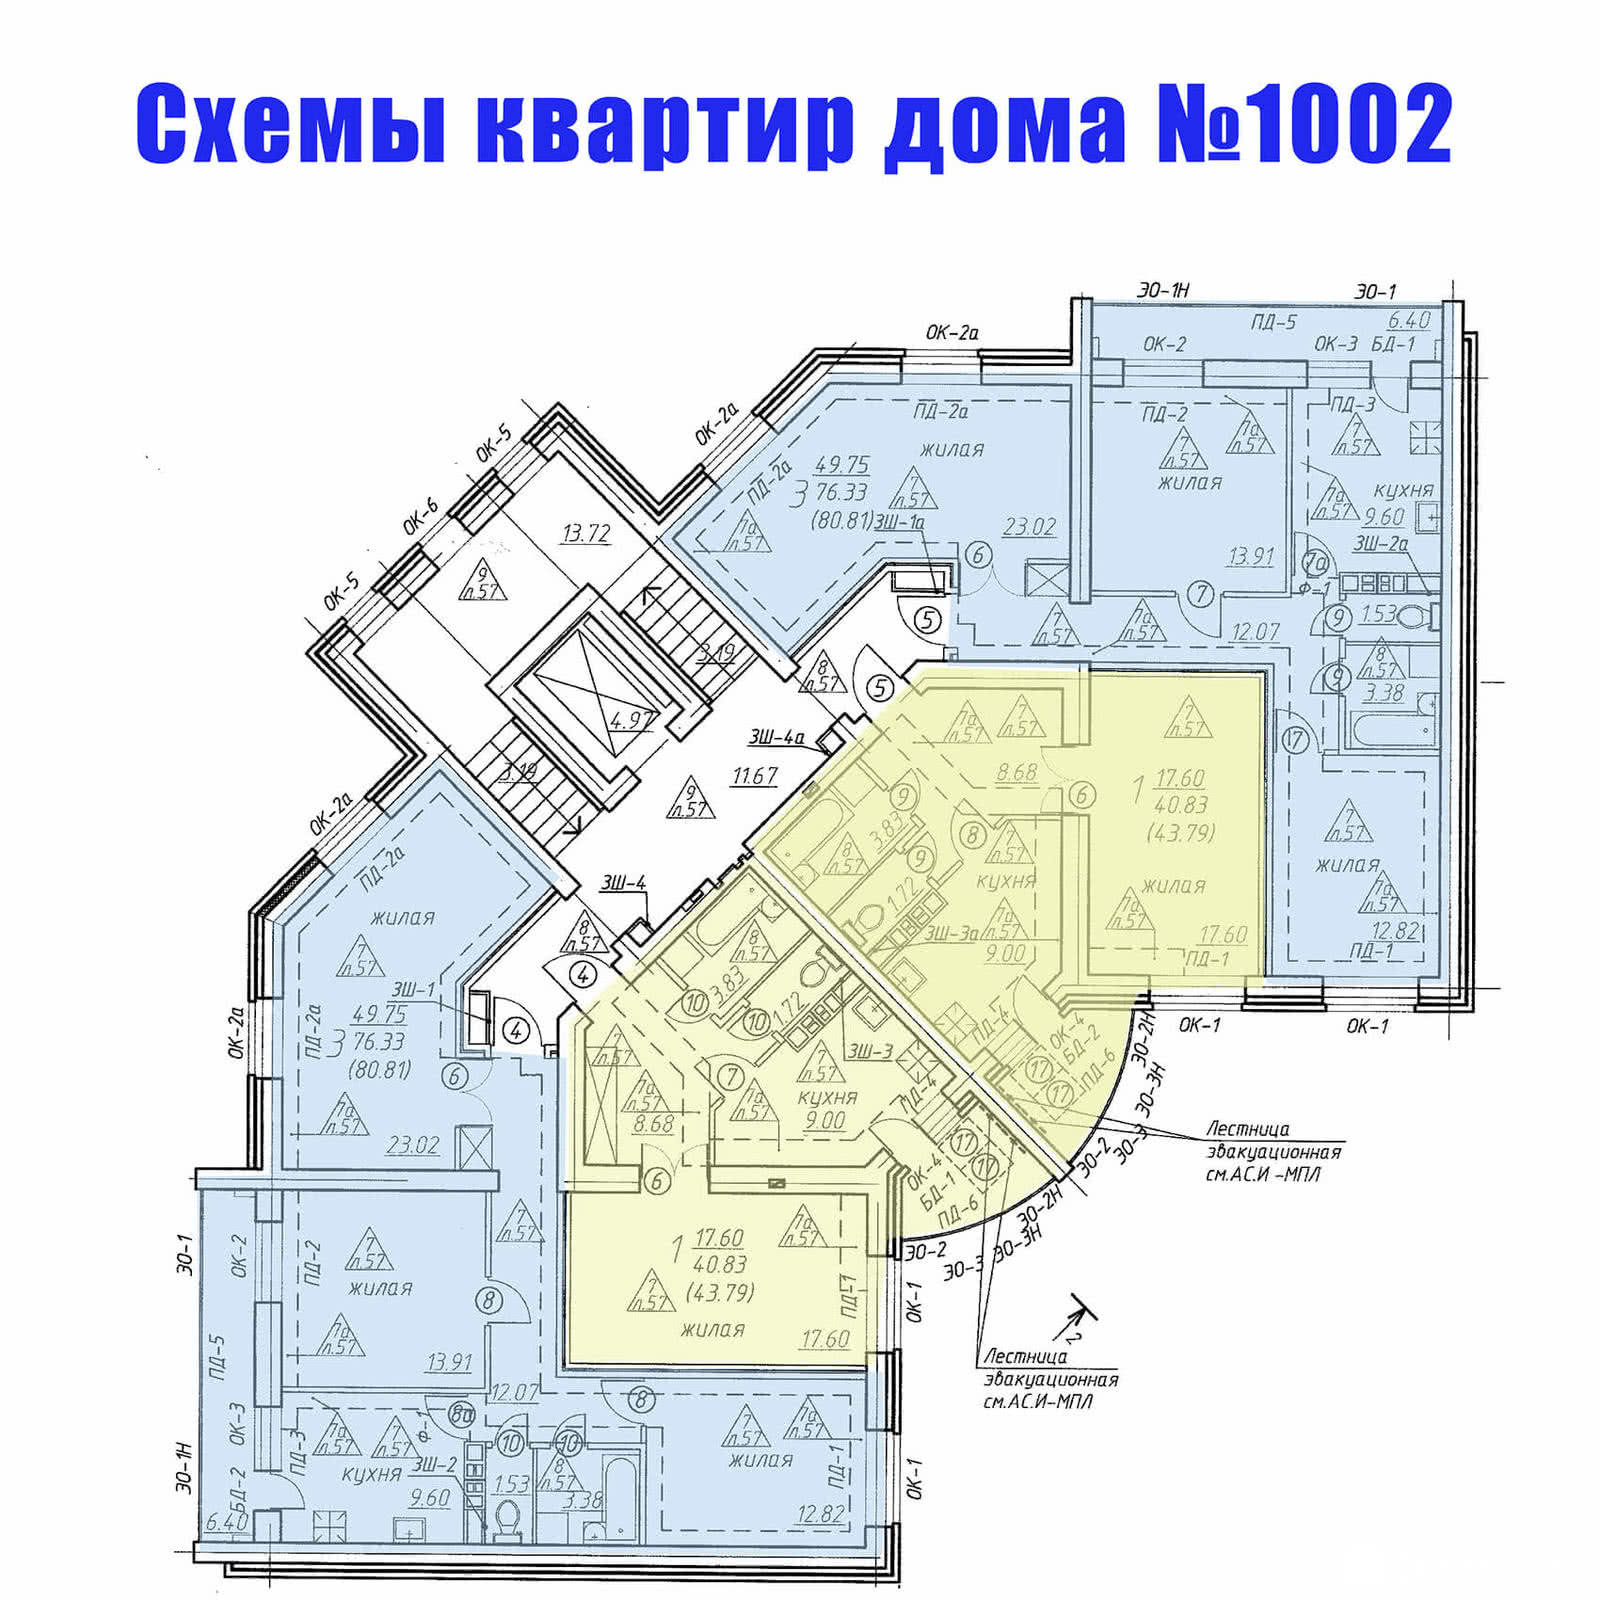 Жилой дом №1002 в микрорайоне №10 г. Новополоцка